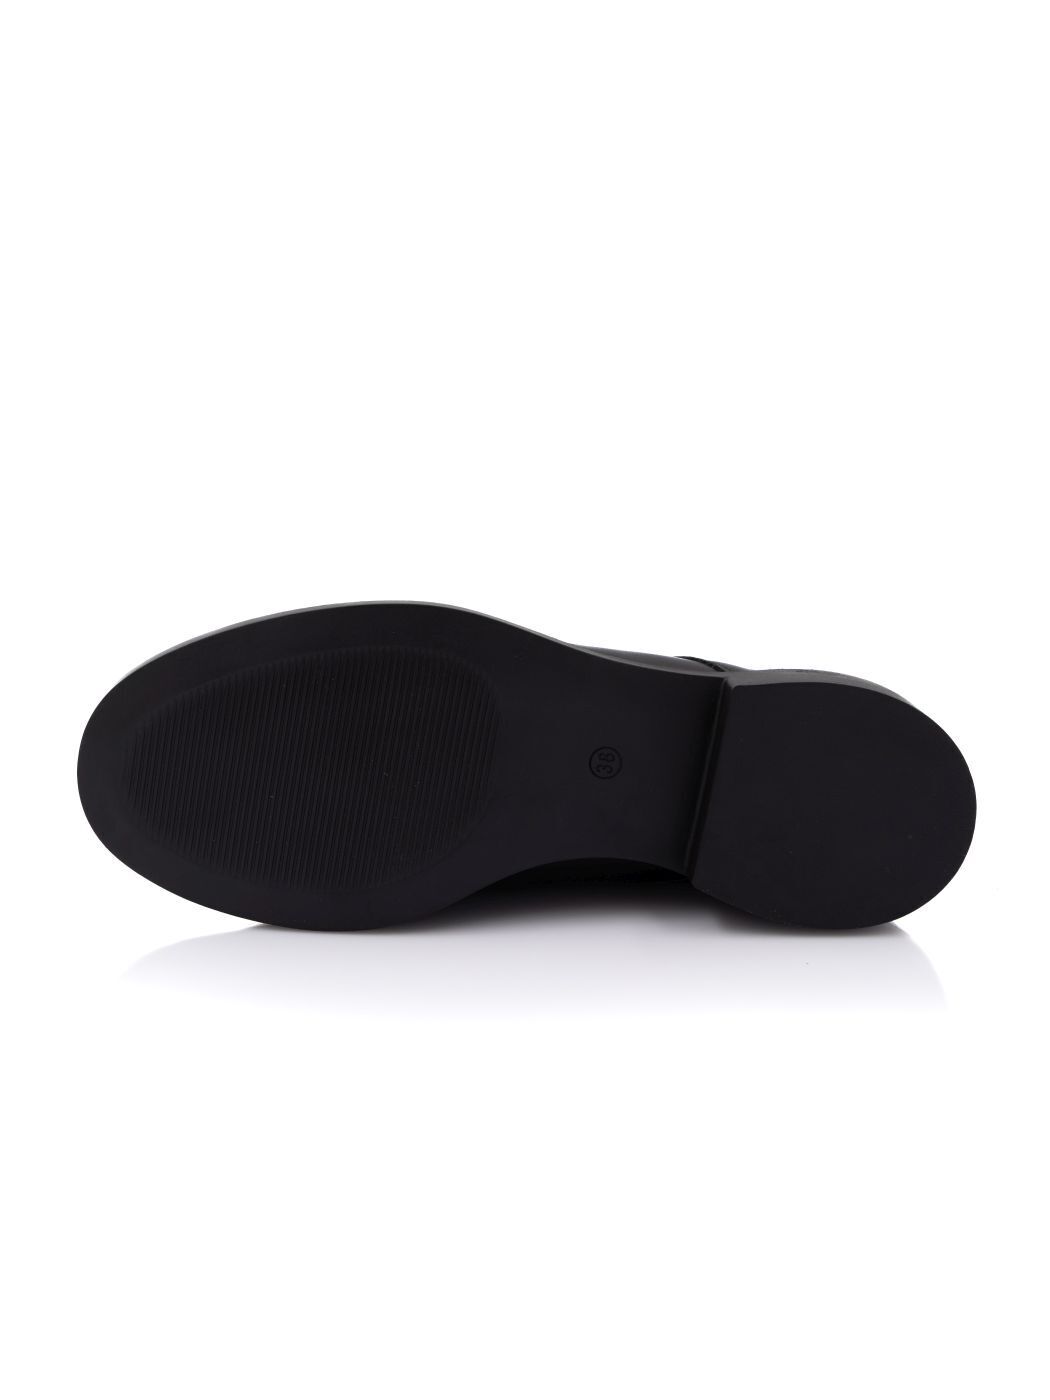 Туфли Oxfords женские черные экокожа каблук устойчивый демисезон 21M вид 2